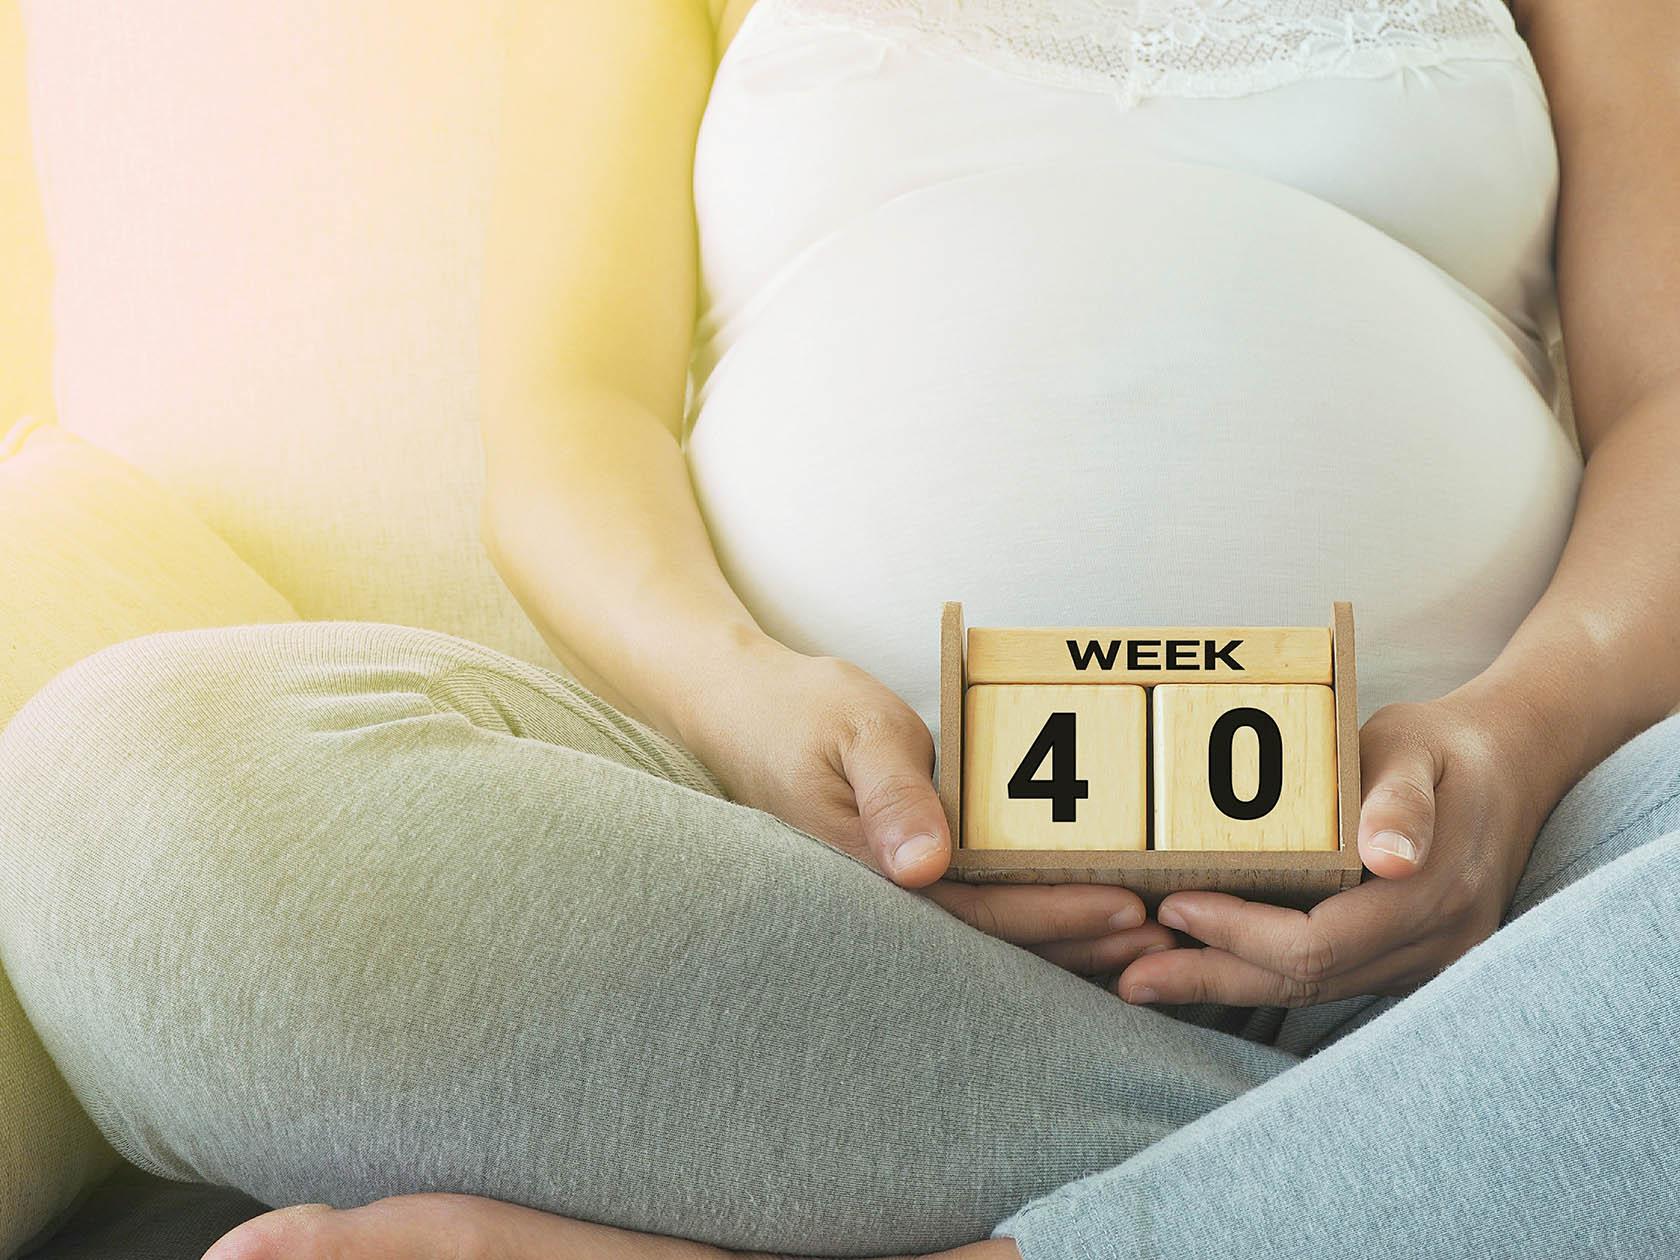 Почему не все рожают в 40 недель? Длительность беременности с научной точки зрения